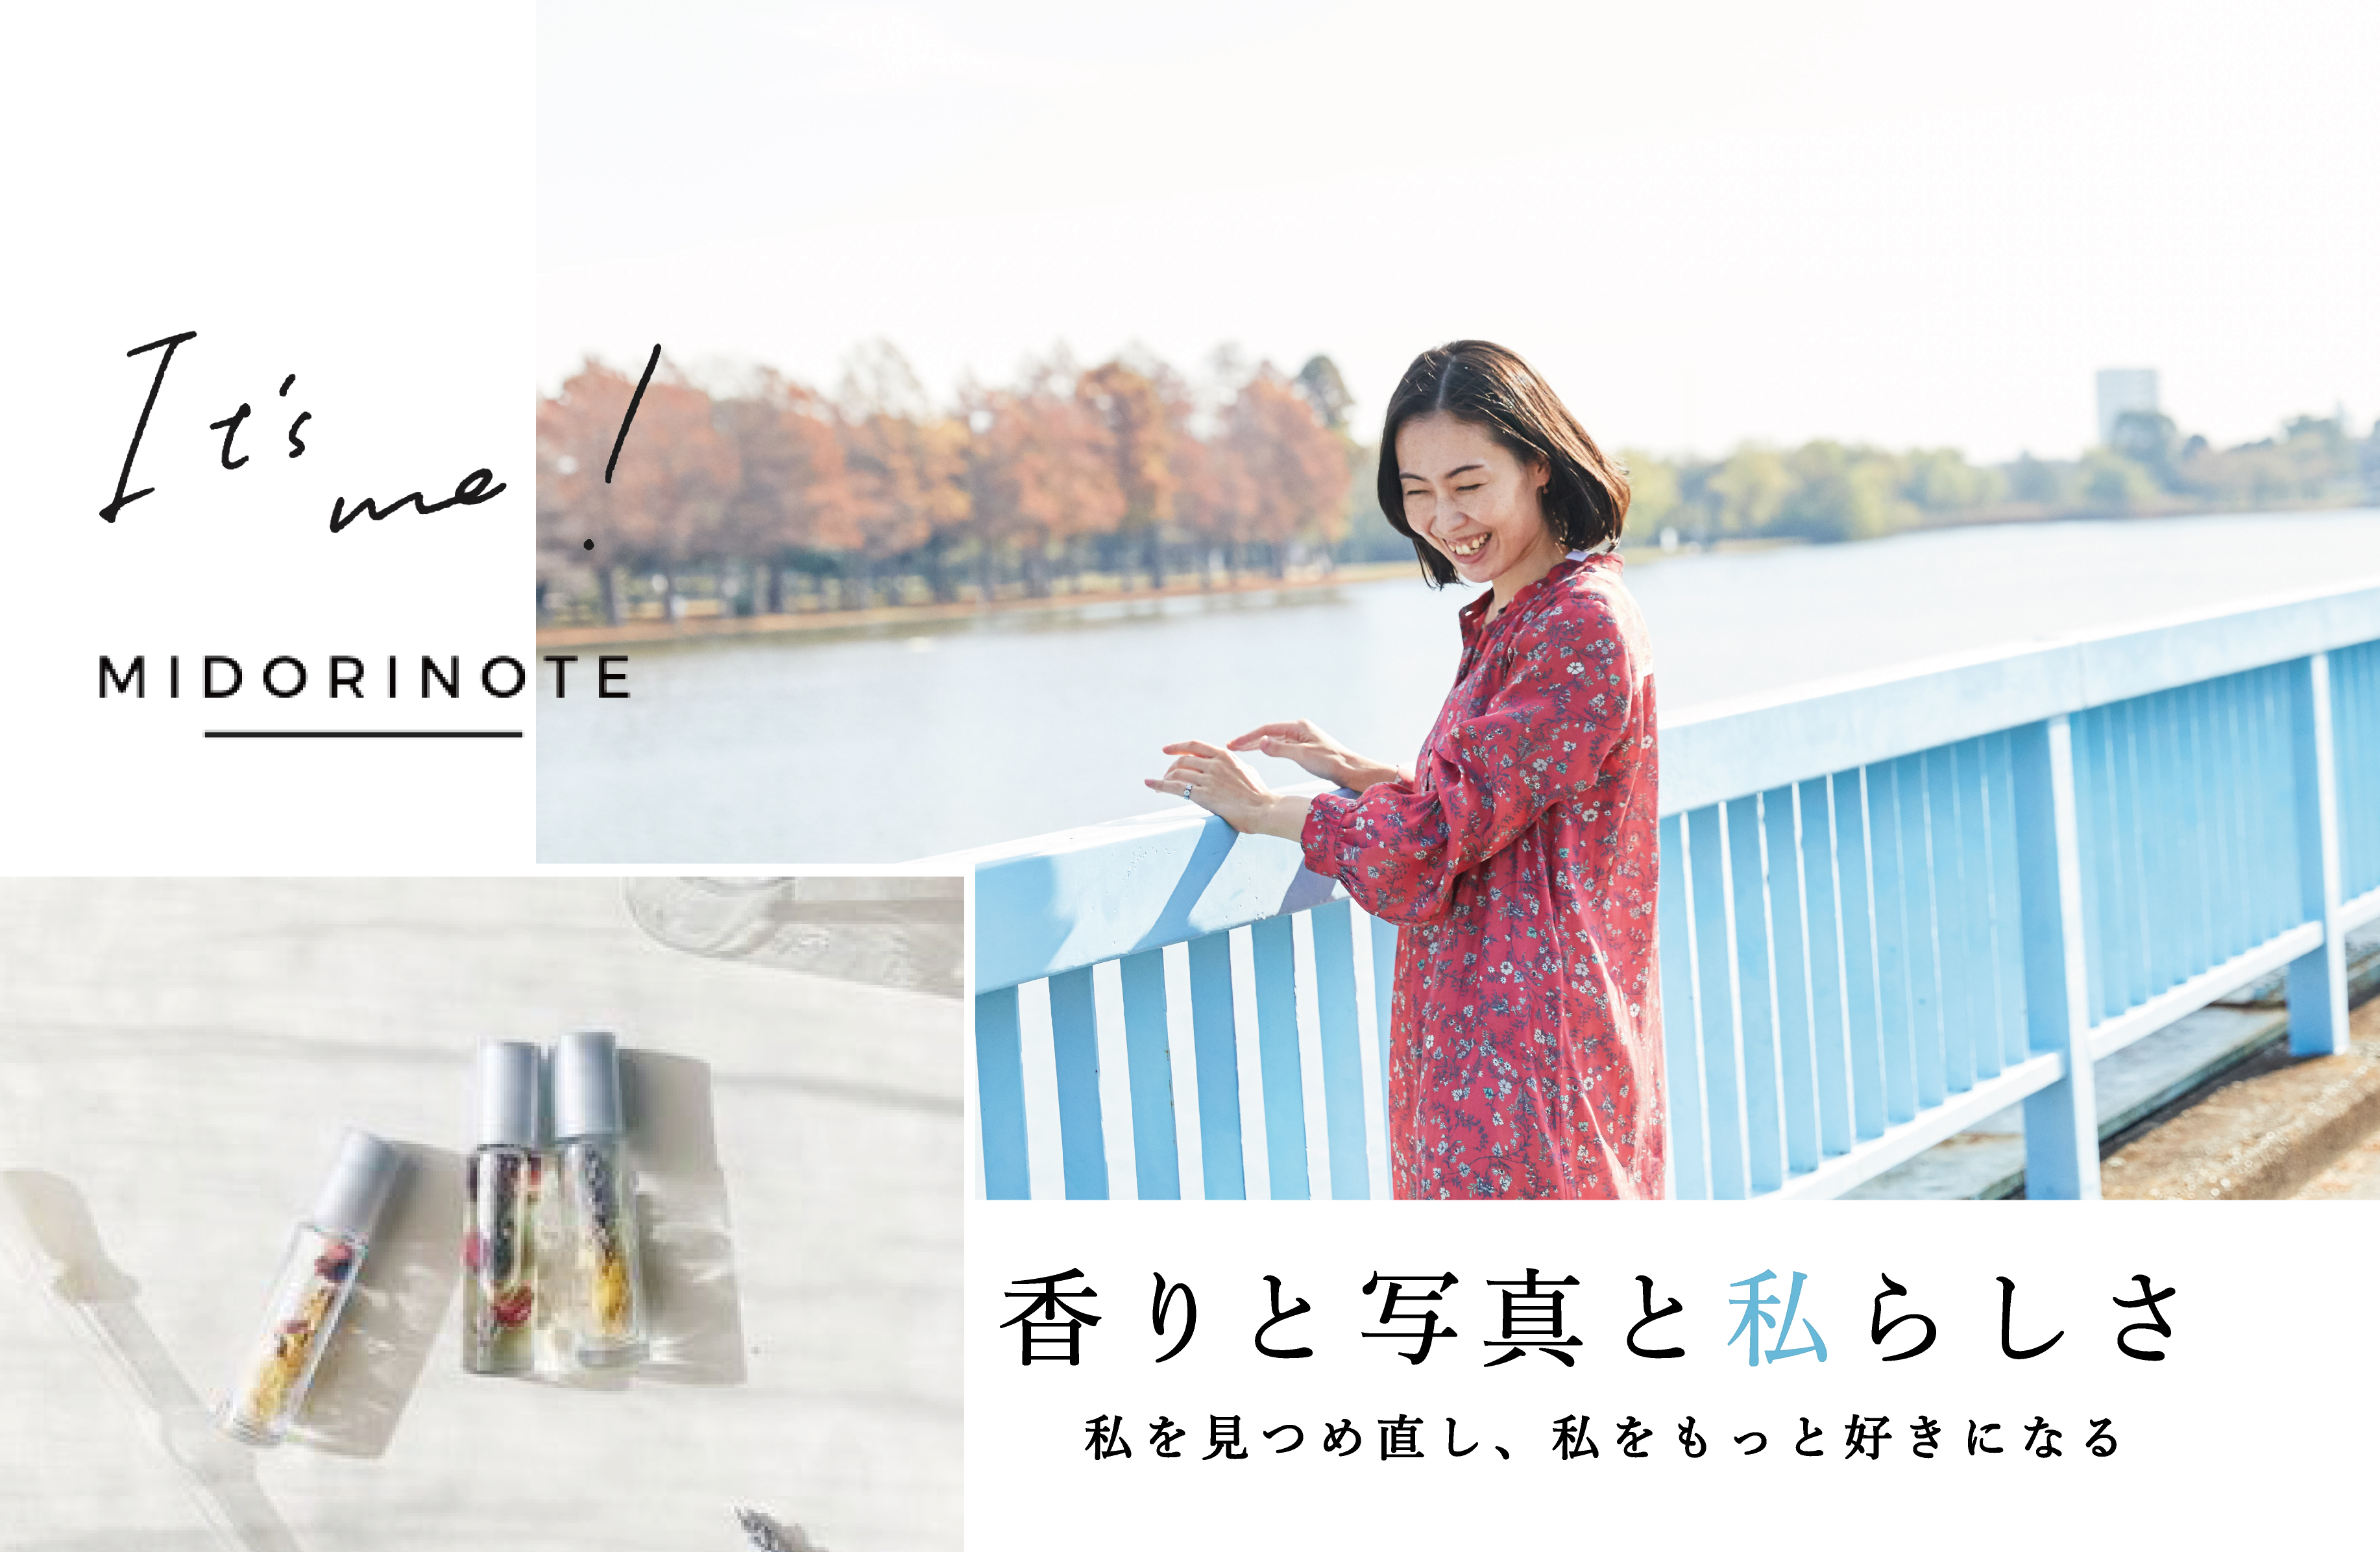 【5月16日】イベントのお知らせ「香りと写真と私らしさ」midorinote×It’s me!